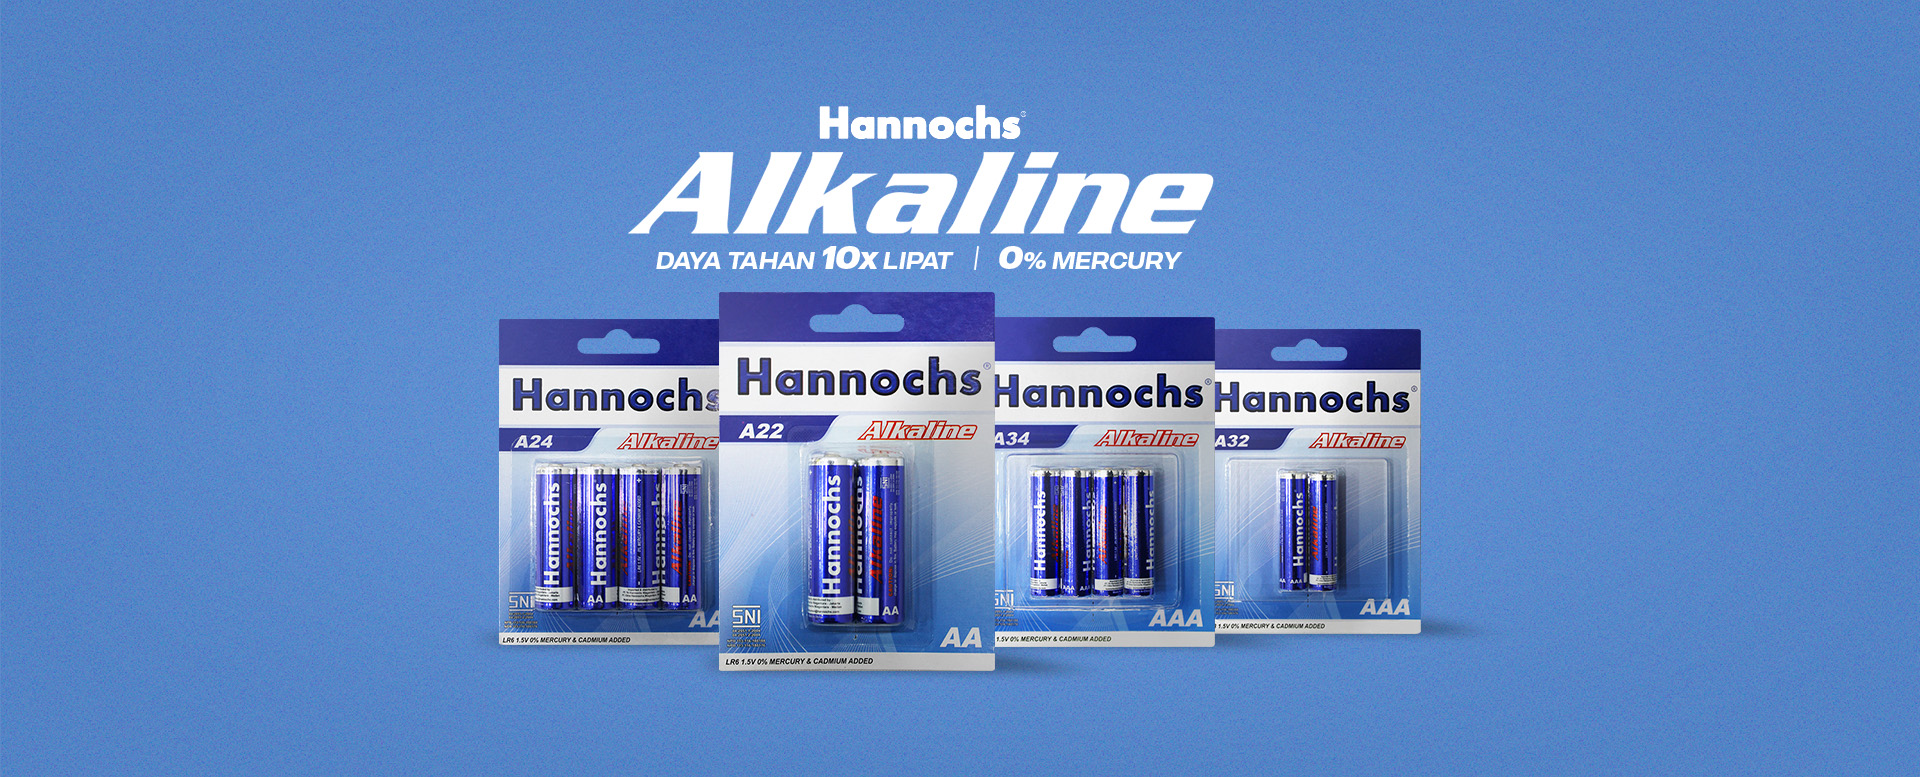 Hannochs Alkaline Battery